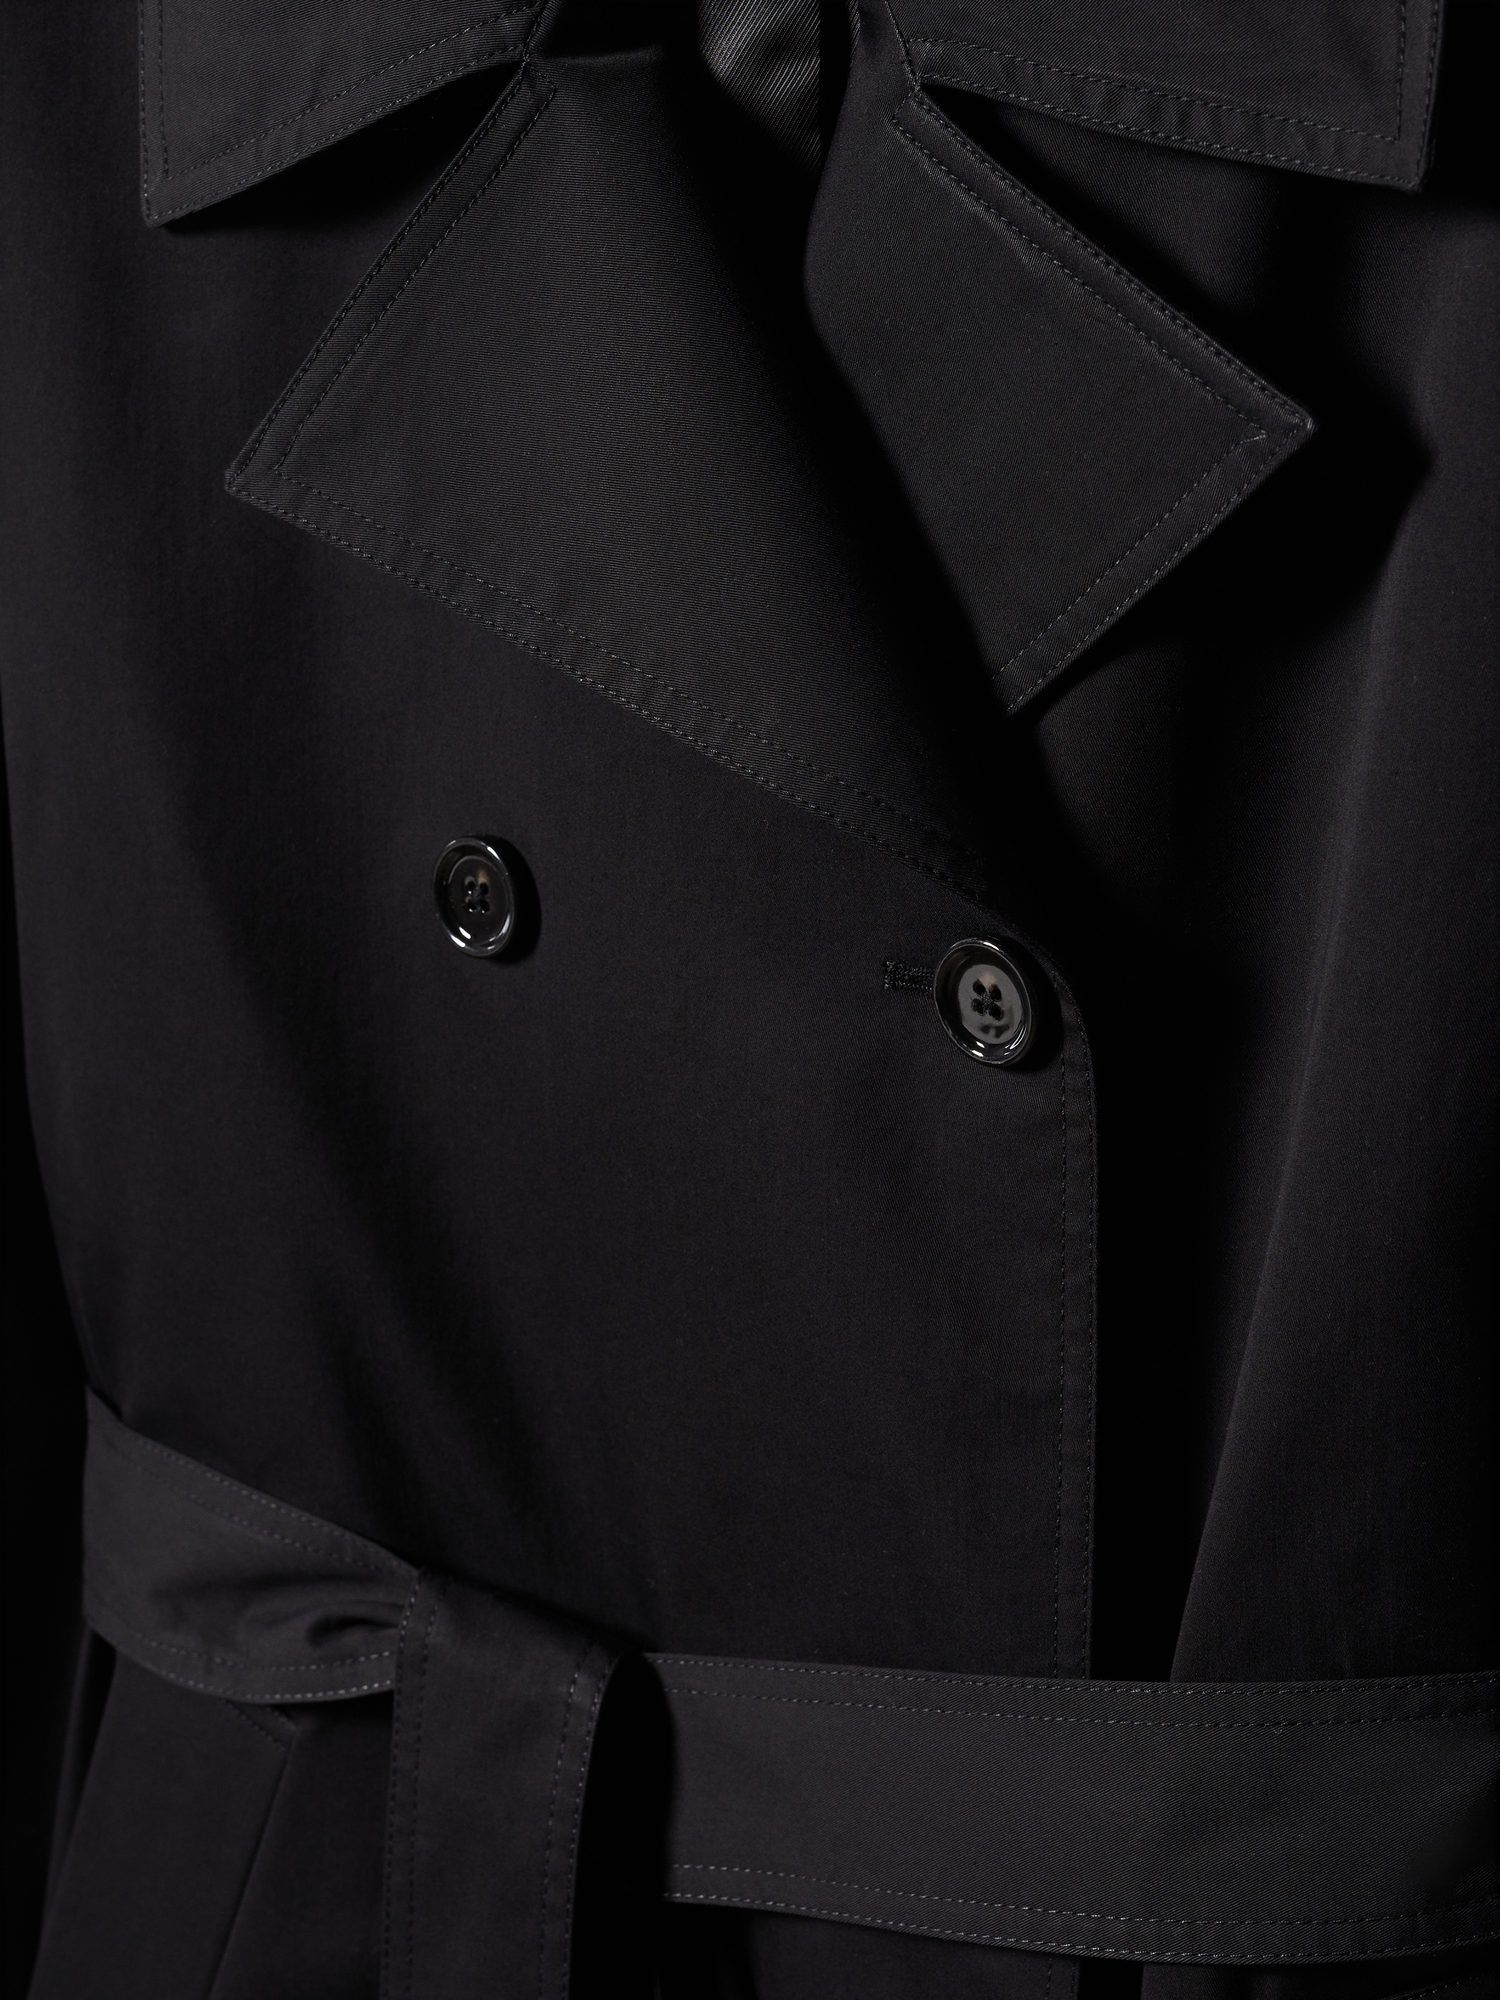 Mango Angela Trench Coat, Black at John Lewis & Partners